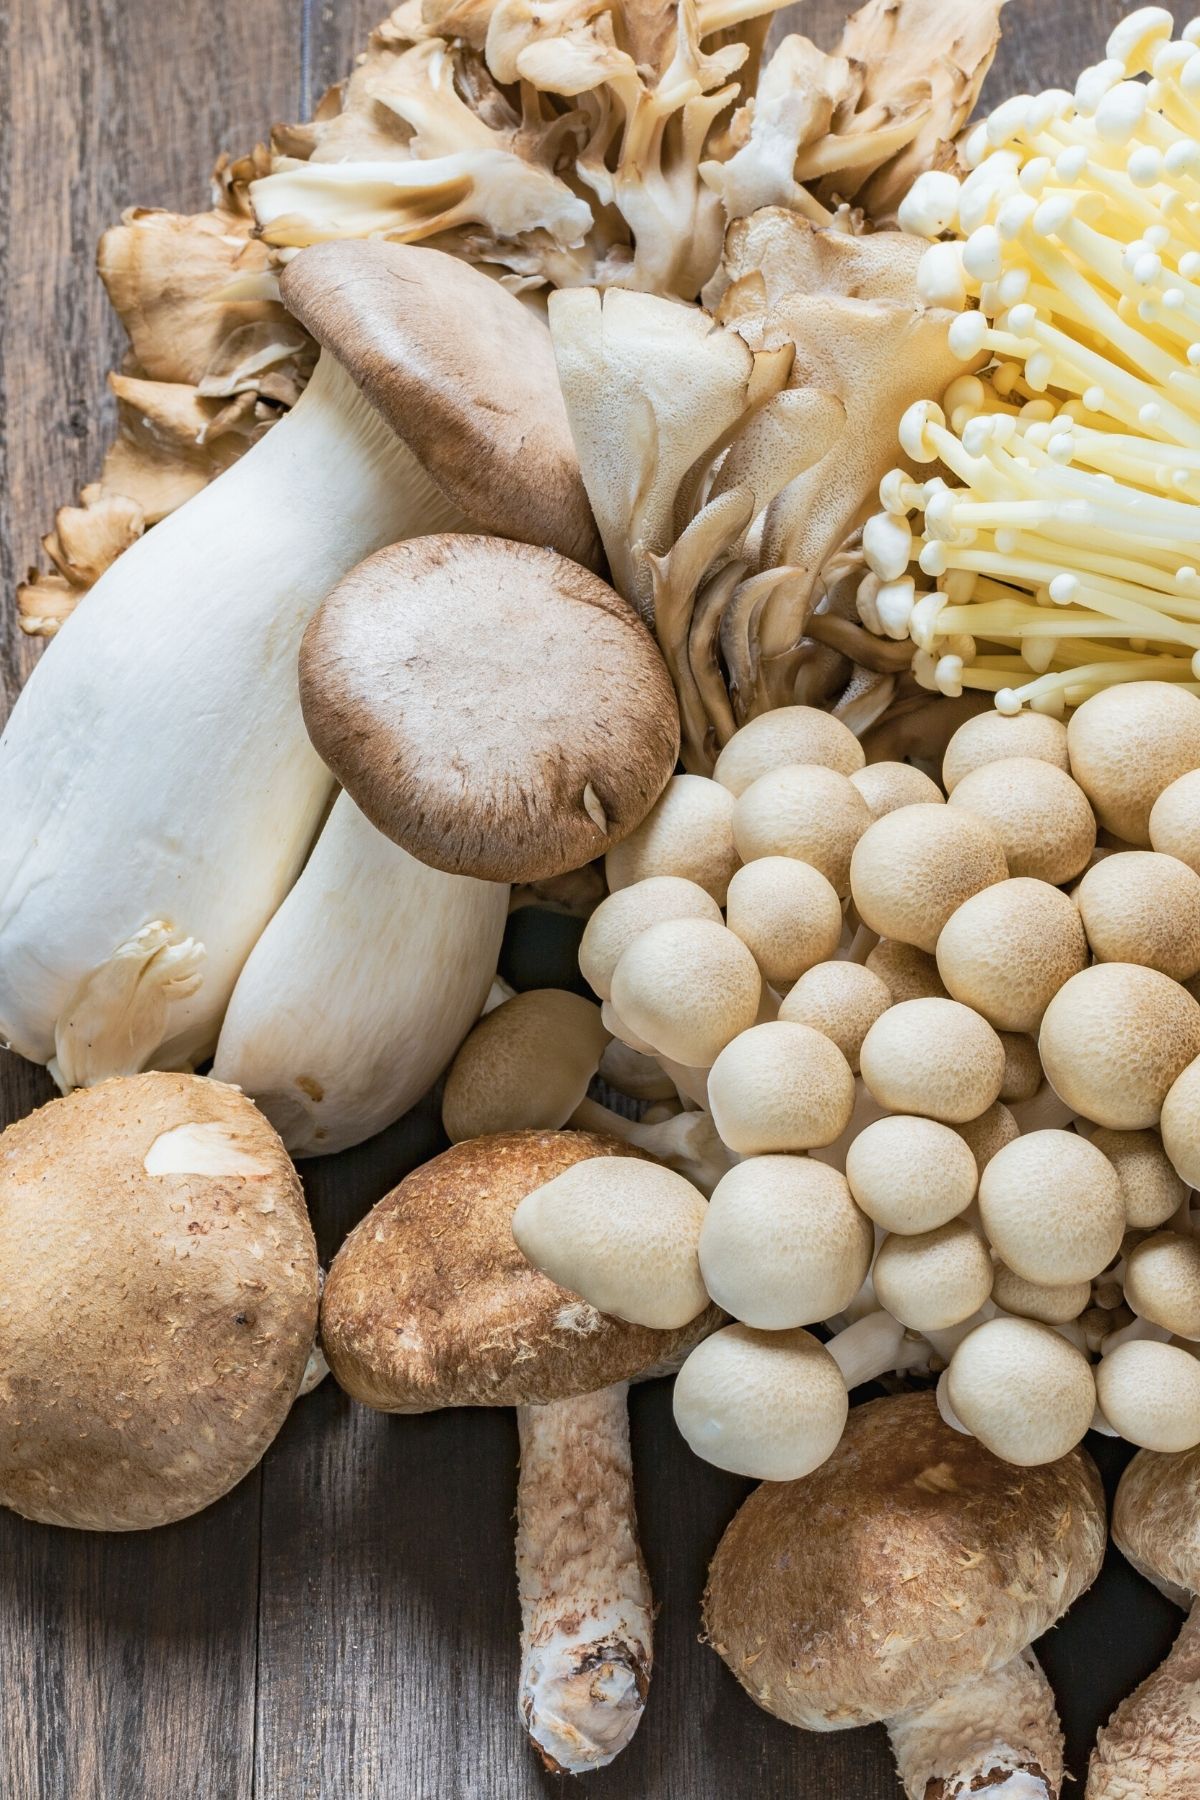 variety of mushrooms on table.